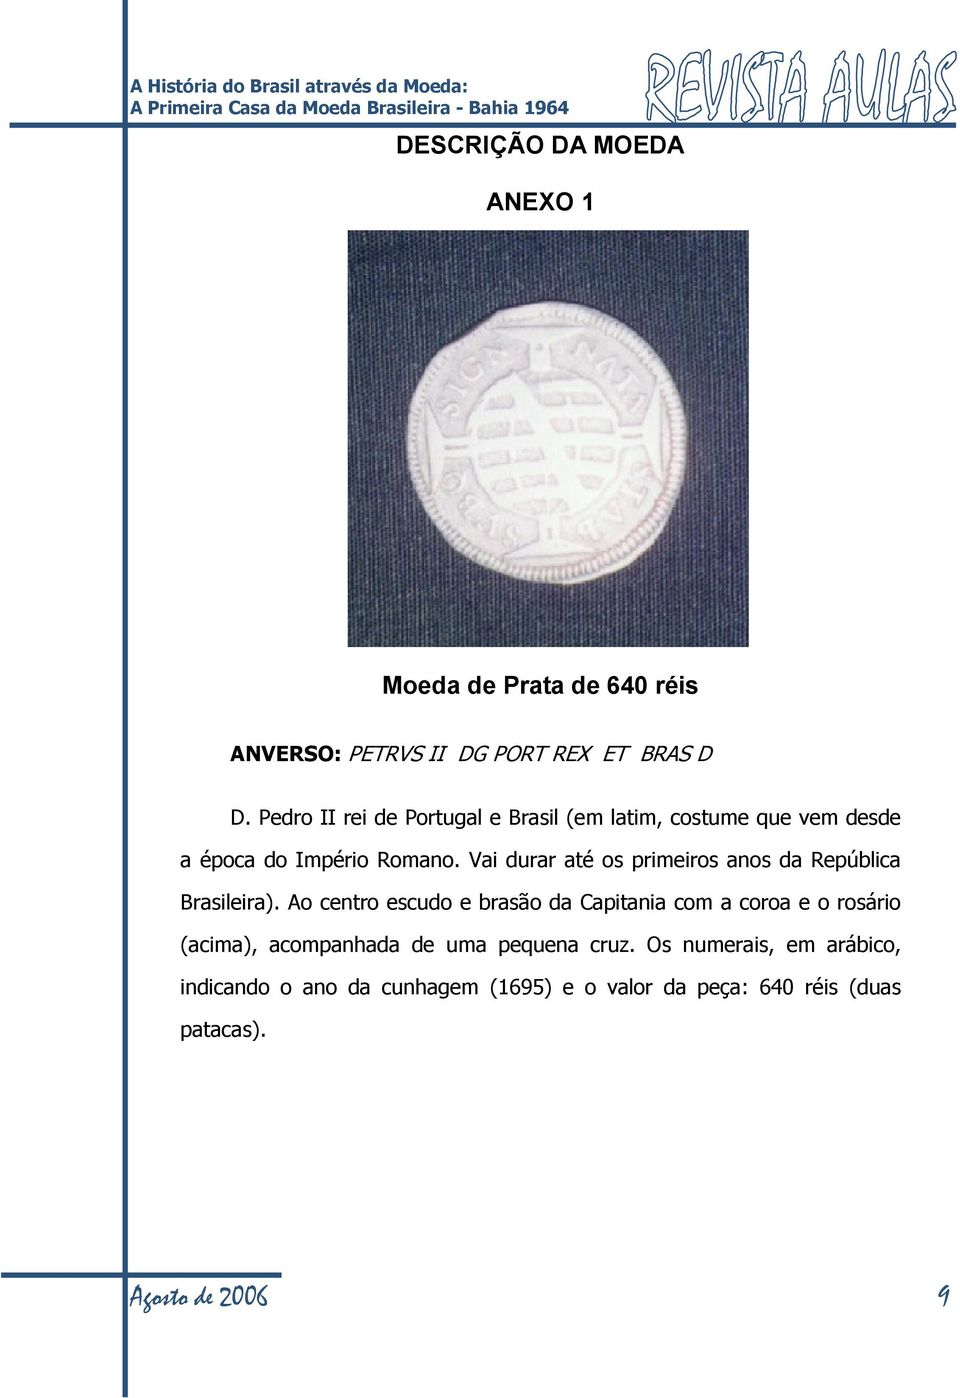 Pedro II rei de Portugal e Brasil (em latim, costume que vem desde a época do Império Romano.